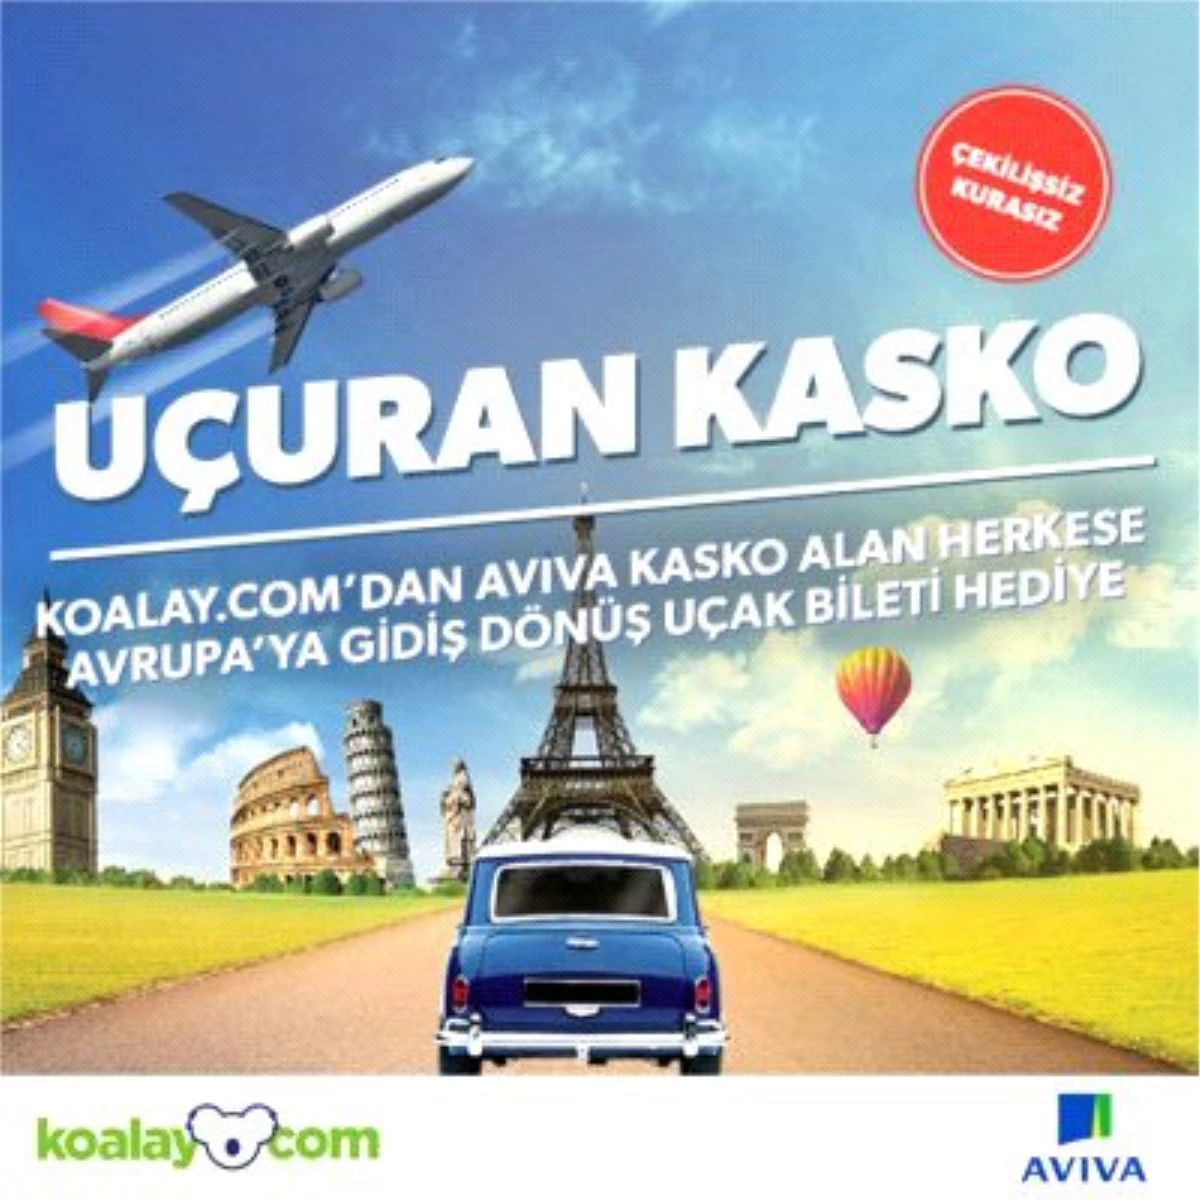 Kasko Sigortasını Koalay.com\'da Yaptıranlar Avrupa\'ya Gidiş Dönüş Uçak Bileti Kazanacak